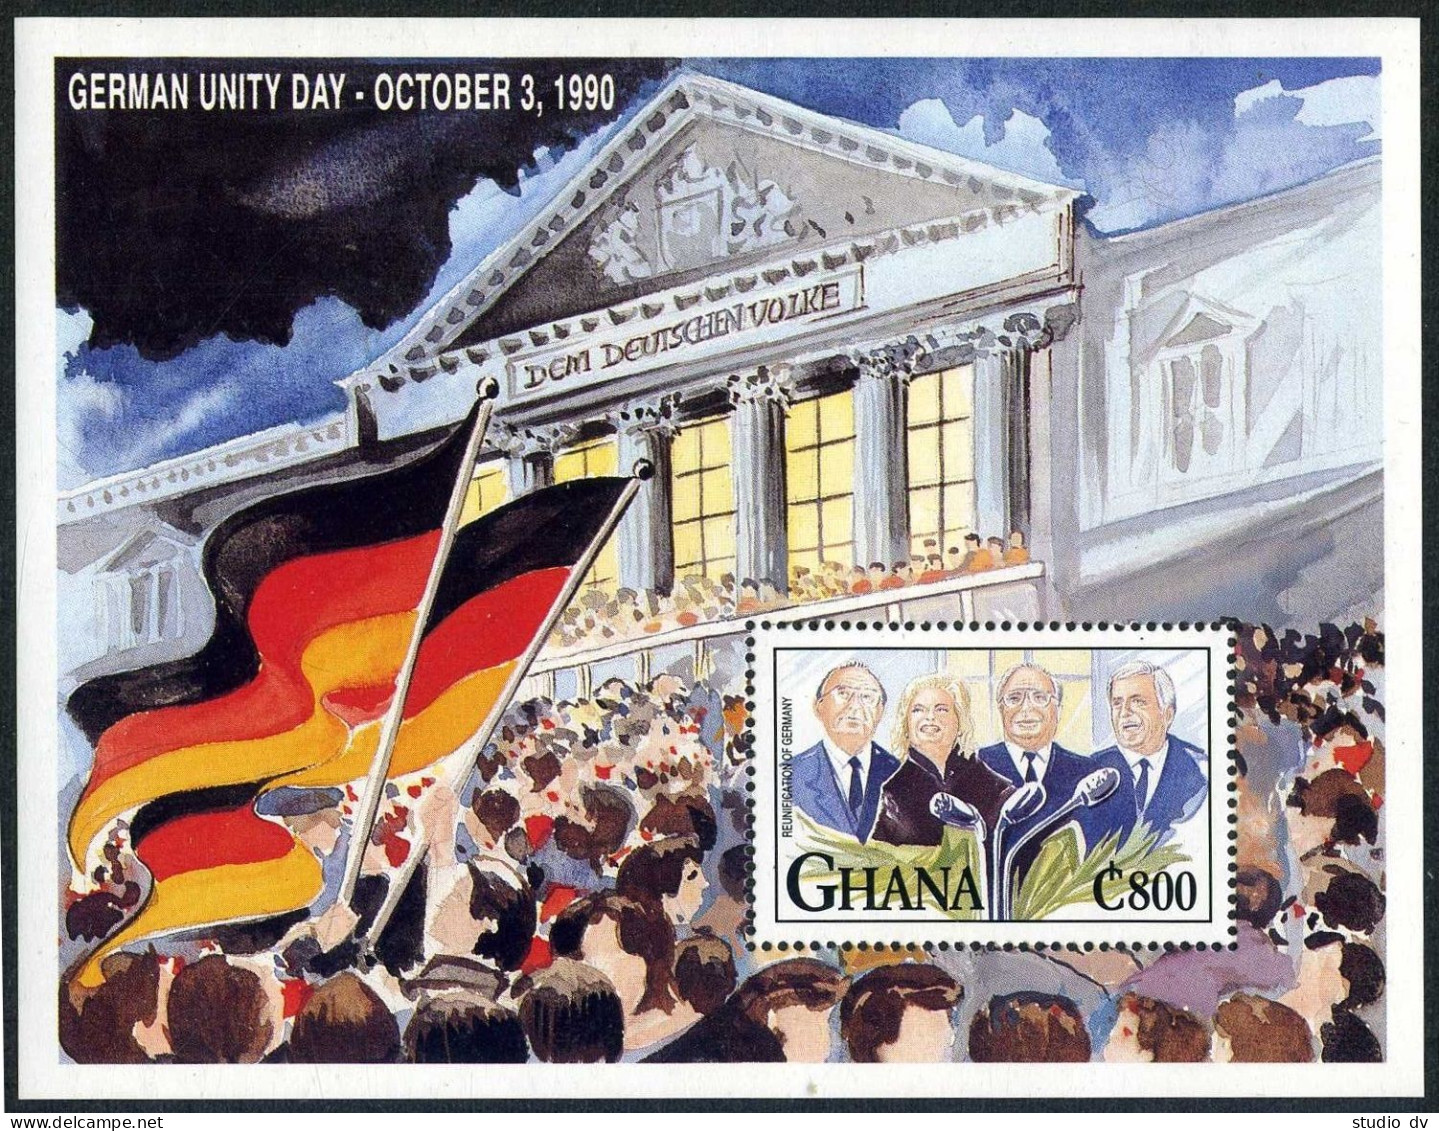 Ghana 1372,MNH.Michel 1651 Bl.190. Reunification Of Germany,1992.Chancellors. - Préoblitérés